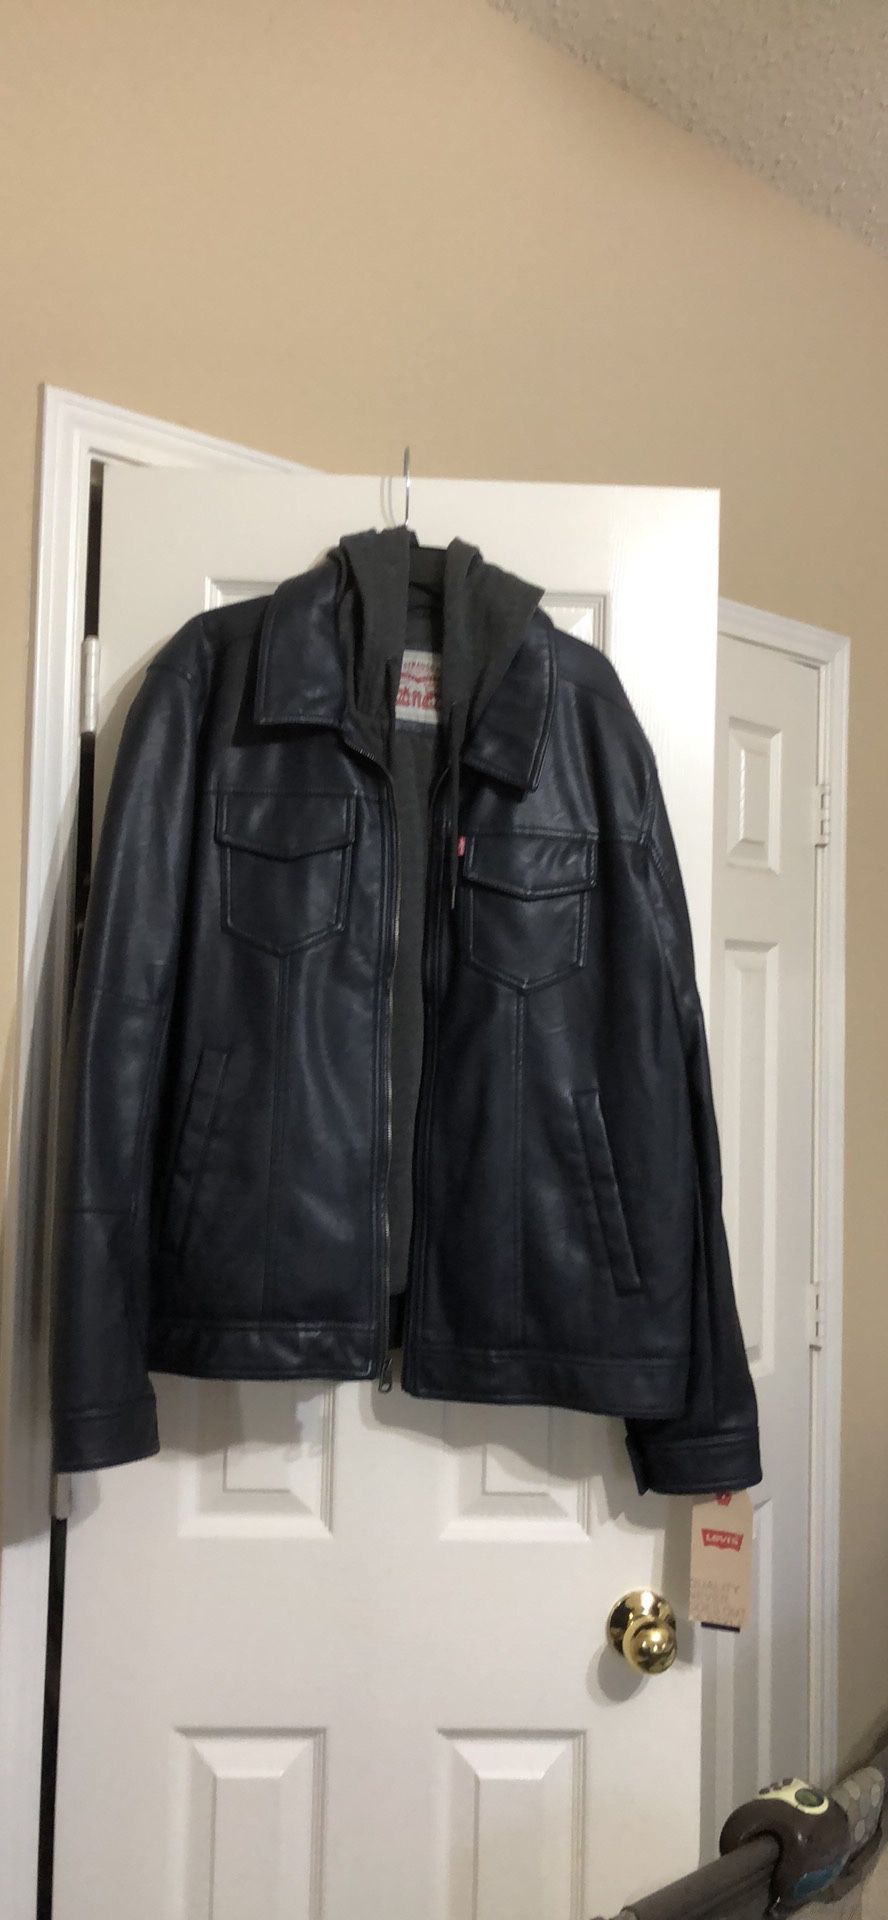 Levi’s leather jacket